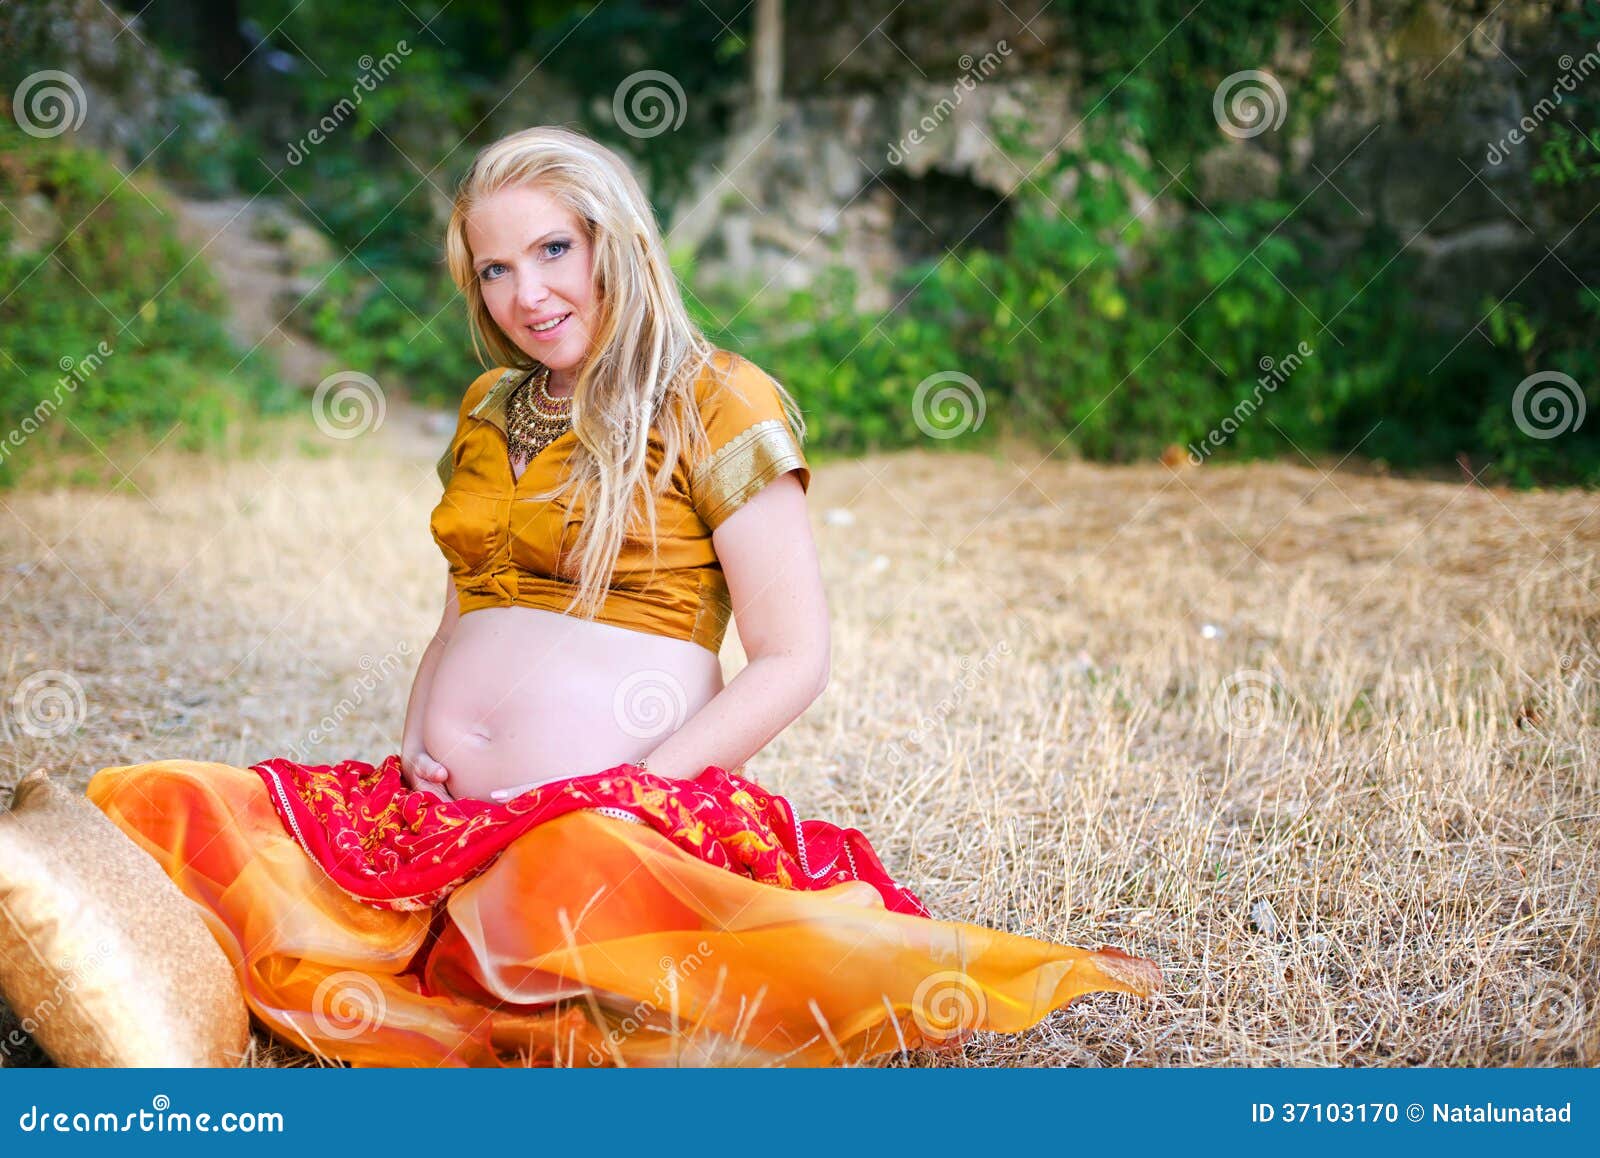 Saree Pregnancy Photoshoot Stock Photos - Free & Royalty-Free